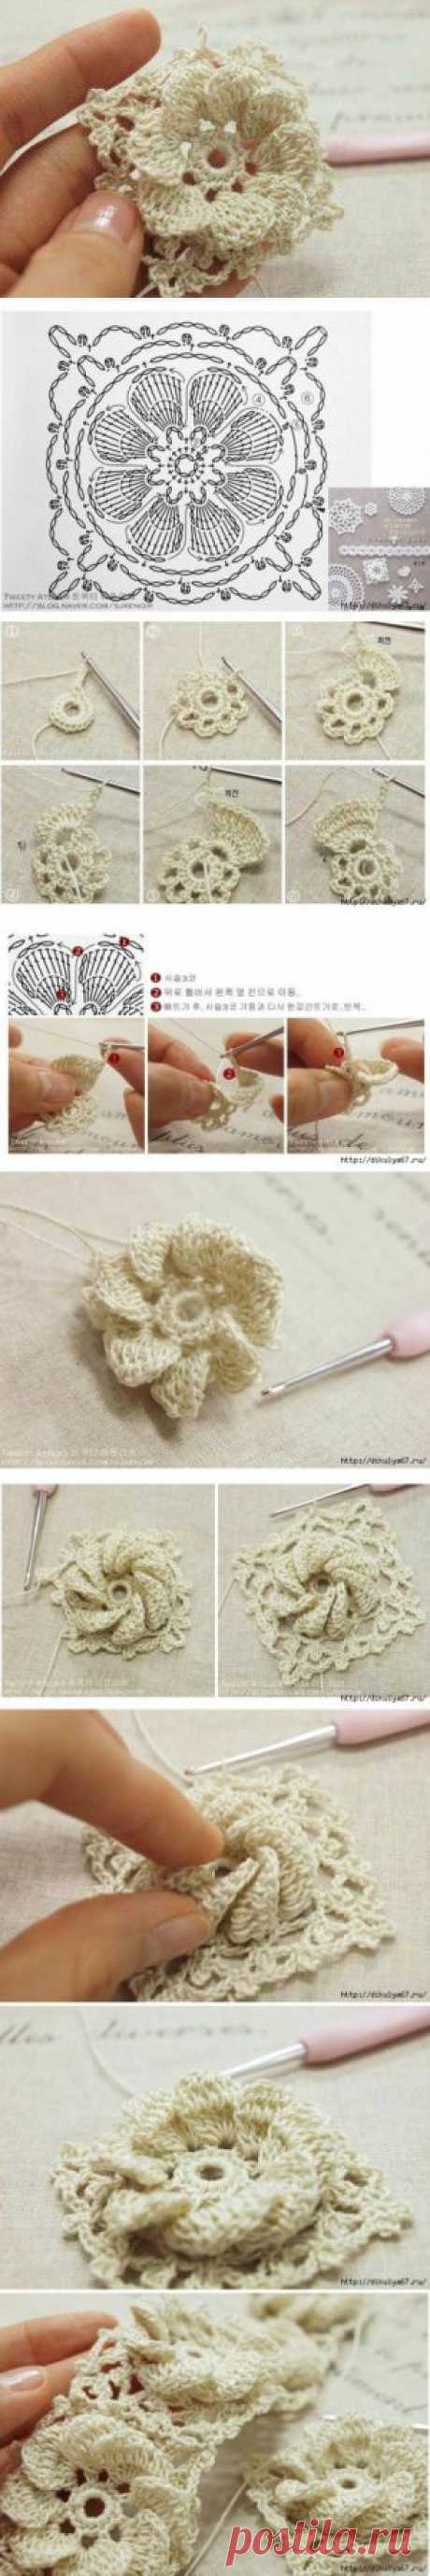 Free lesson knitting flower. Crochet flower pattern | Laboratory household